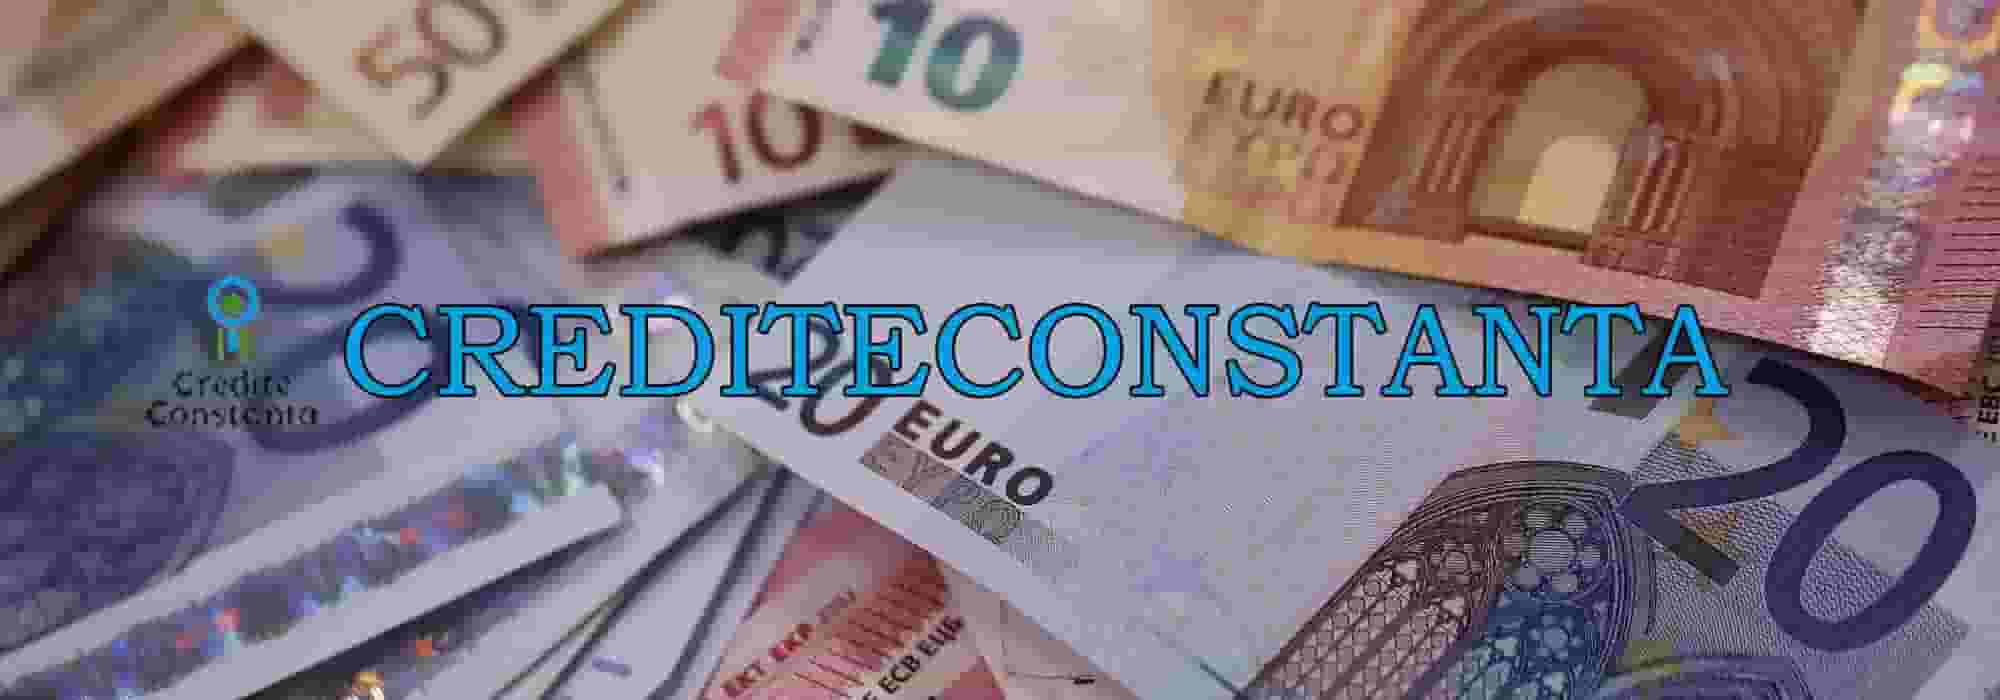 Credite Constanta Euro